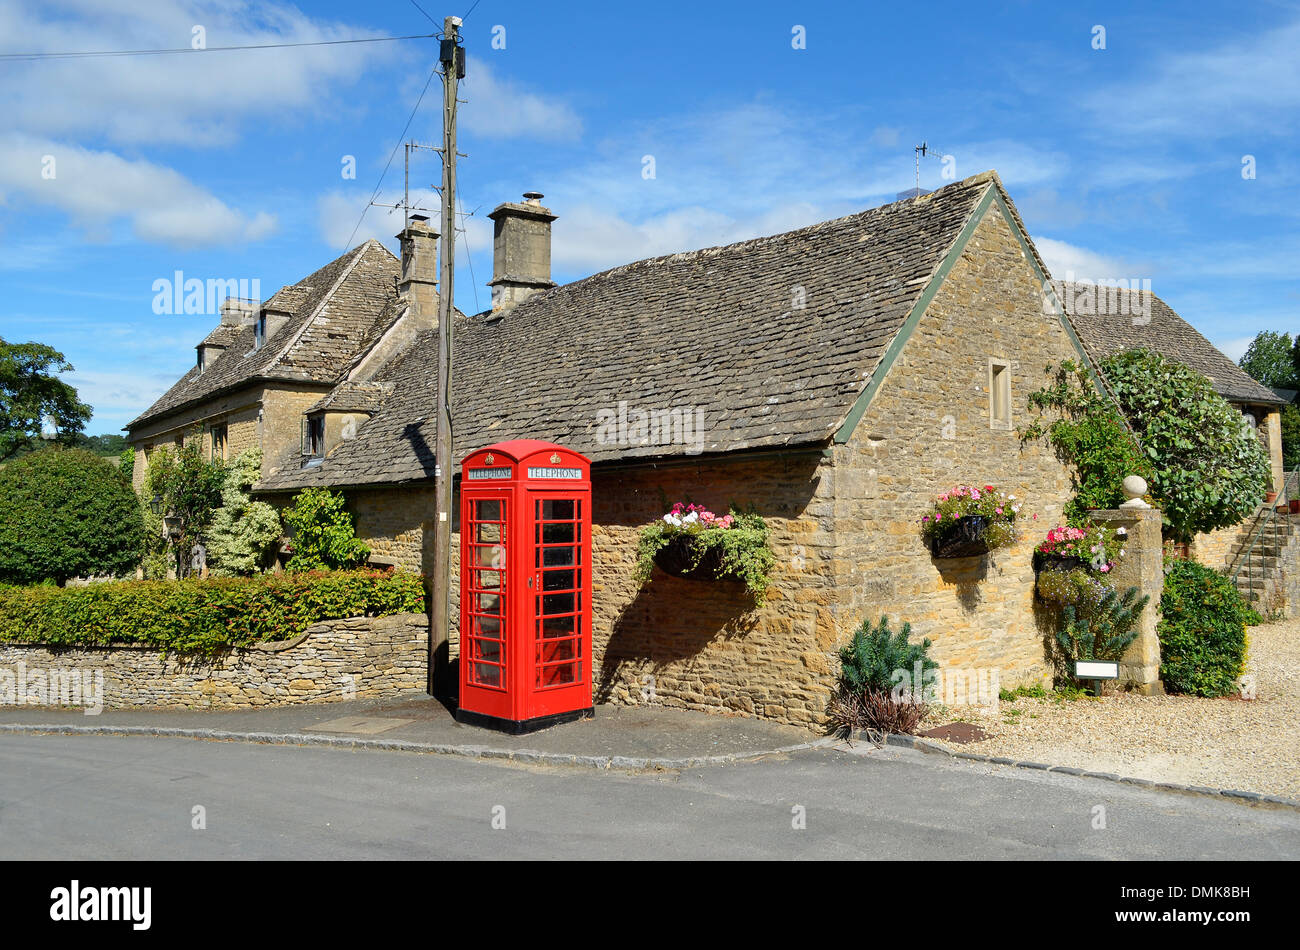 Honig-farbigen Häusern aus Stein und eine rote Telefonzelle in einem Dorf in den Cotswolds im ländlichen England. Stockfoto